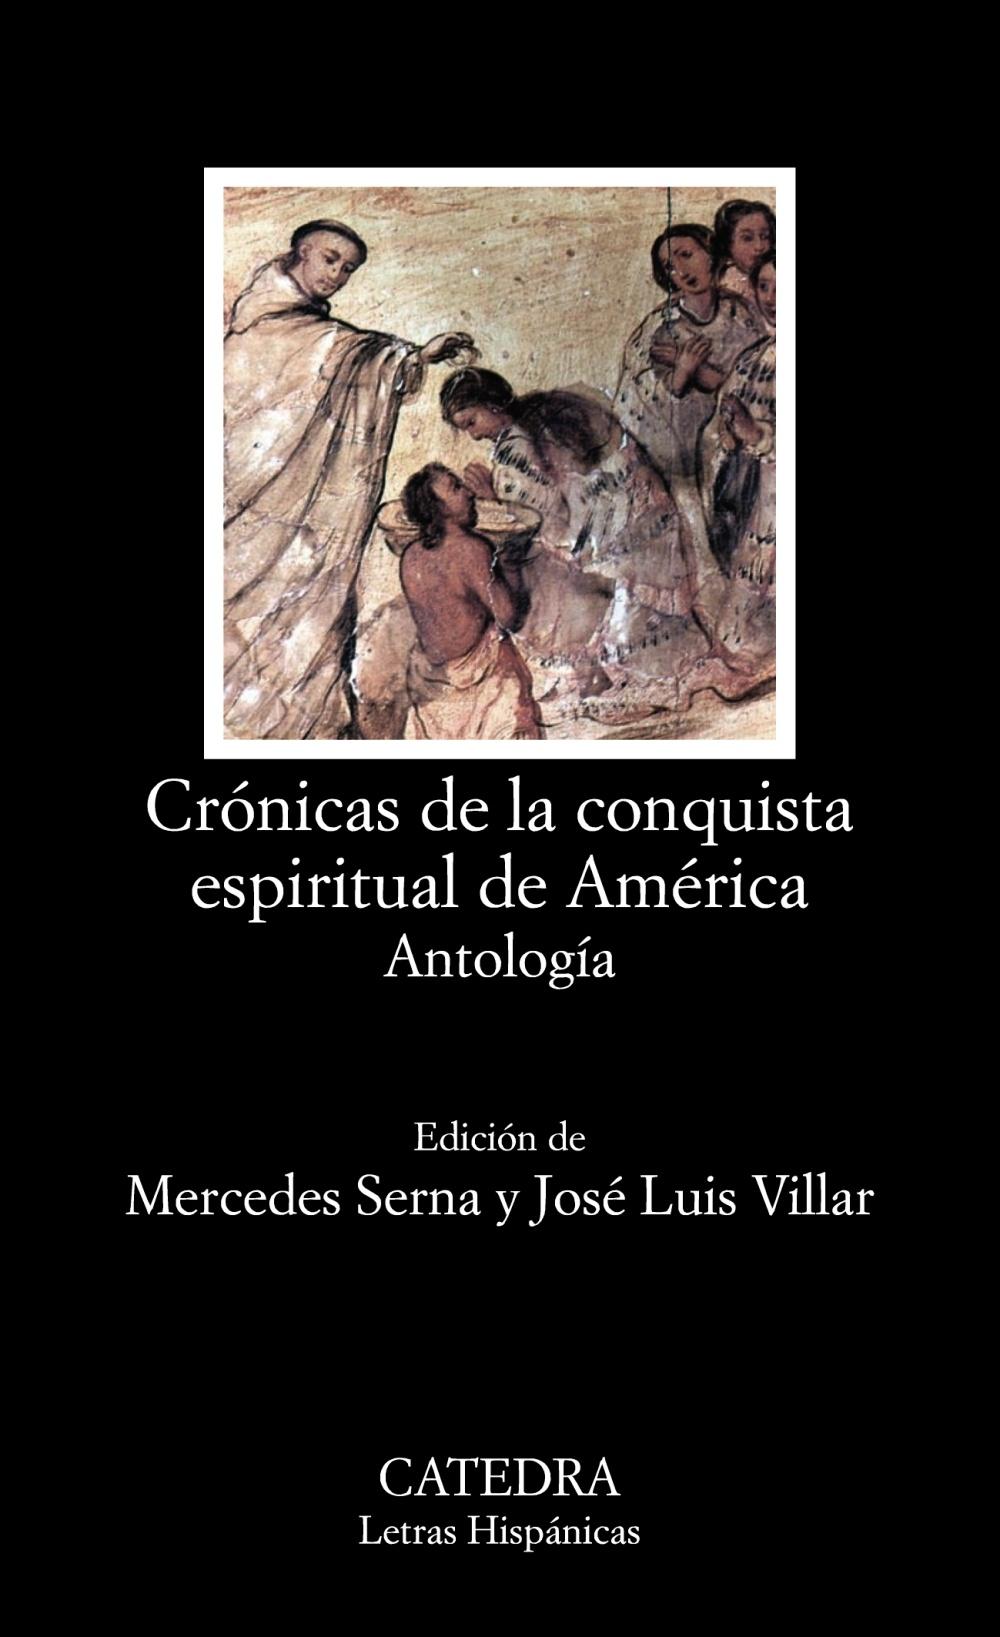 CRONICAS DE LA CONQUISTA ESPIRITUAL DE AMERICA "ANTOLOGIA"